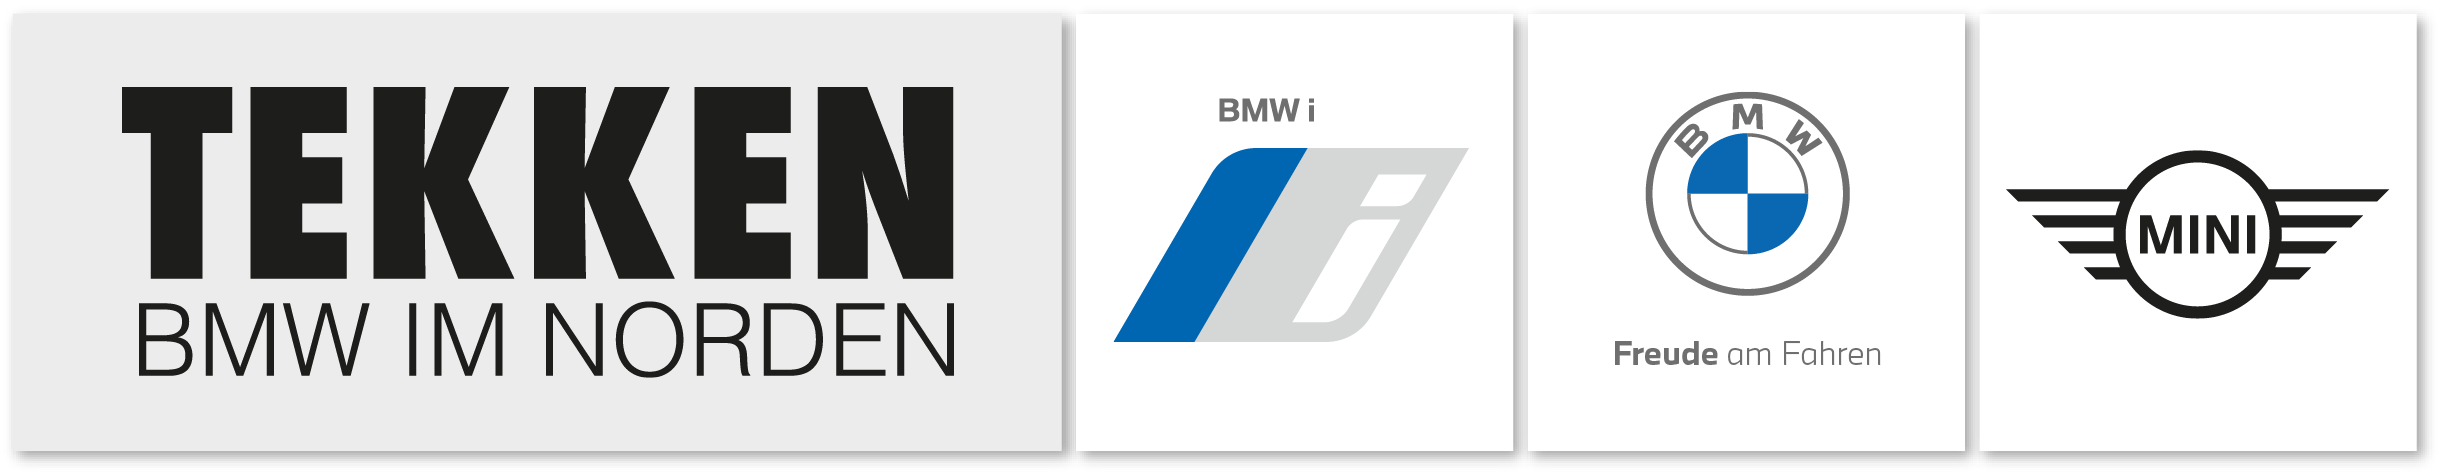 BMW Tekken